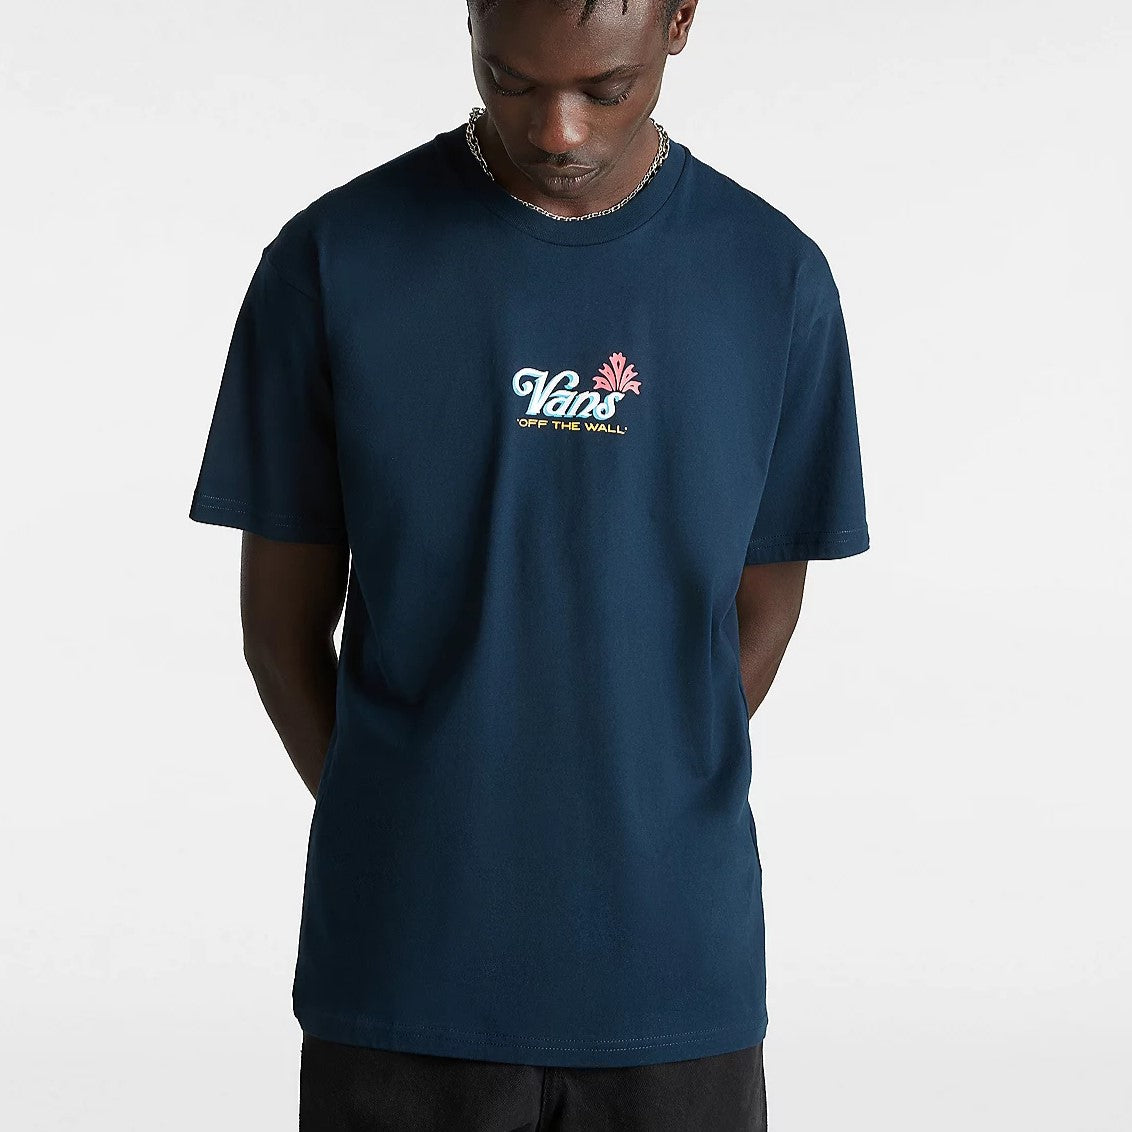 VANS Pineapple Skull Graphic T-Shirt - Navy